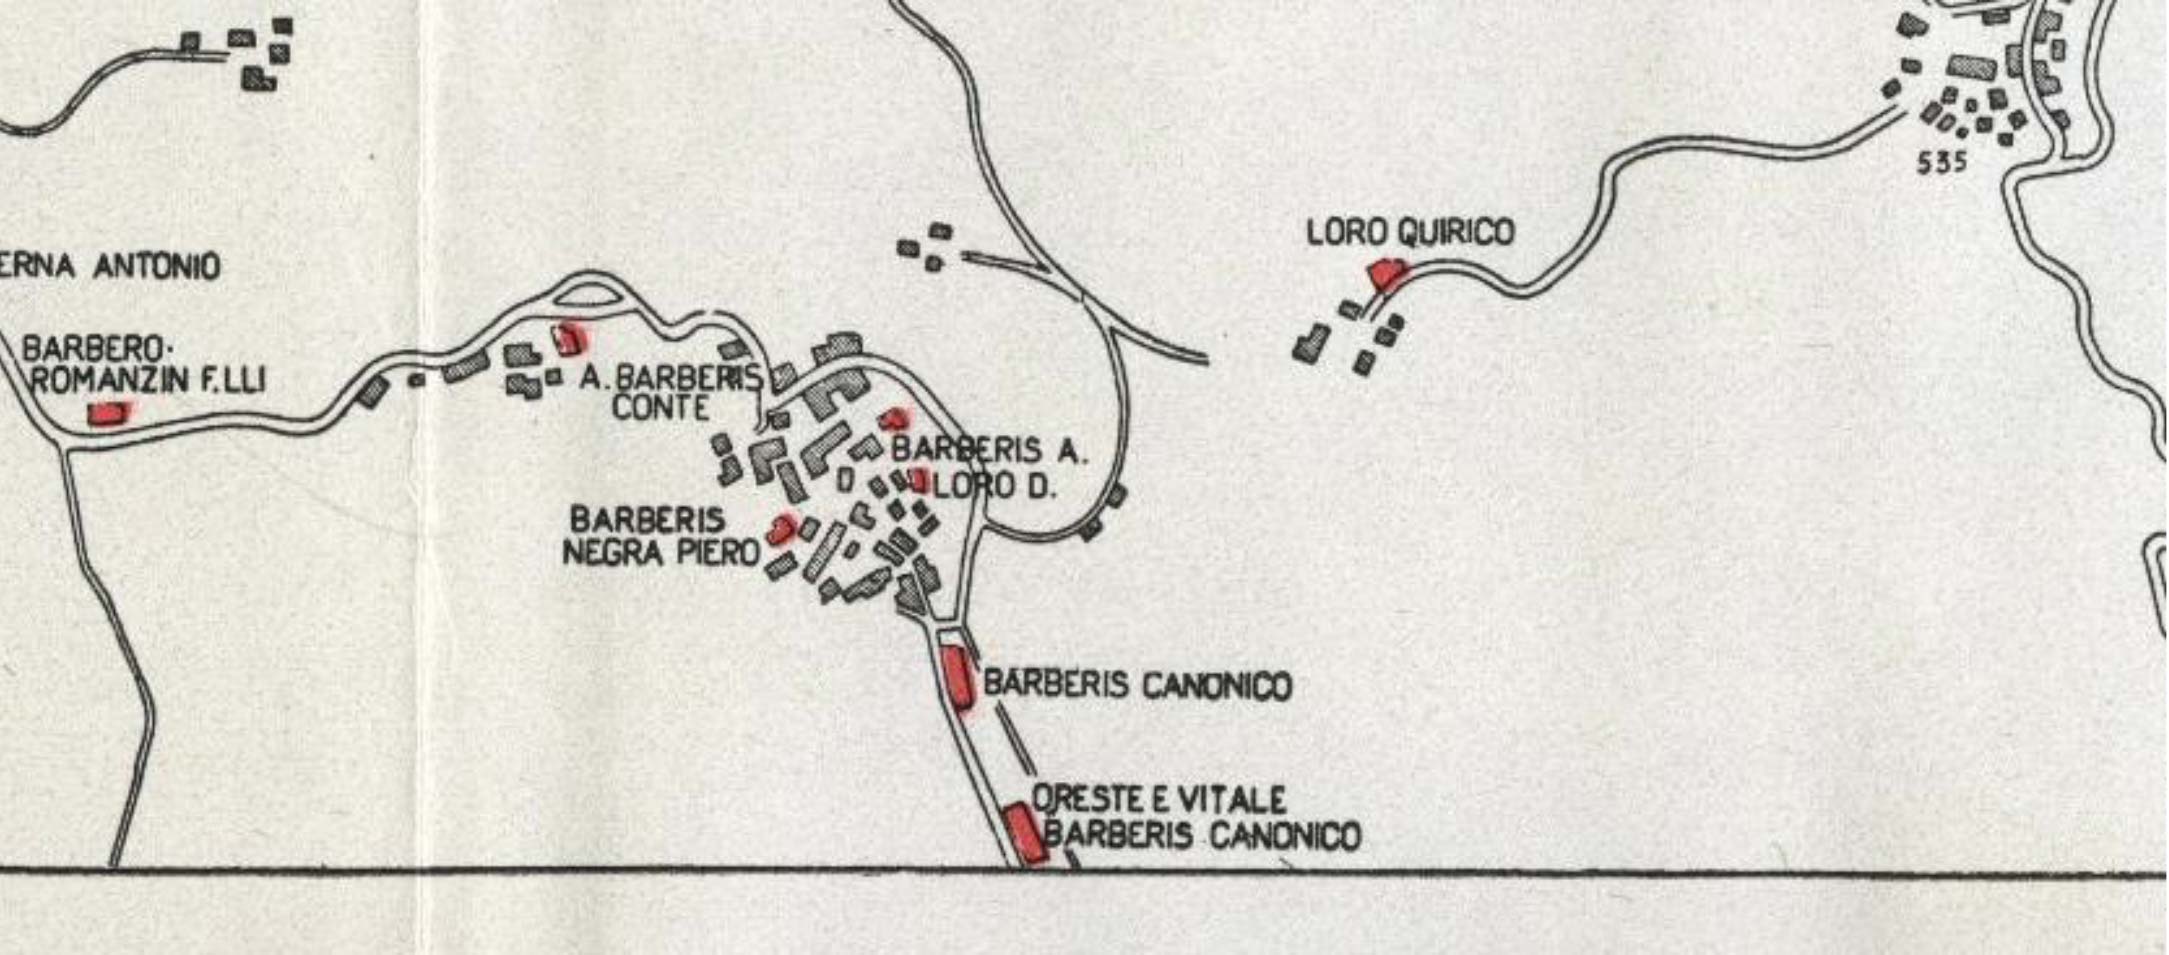 1934년 에서 발췌된 지도의 사진